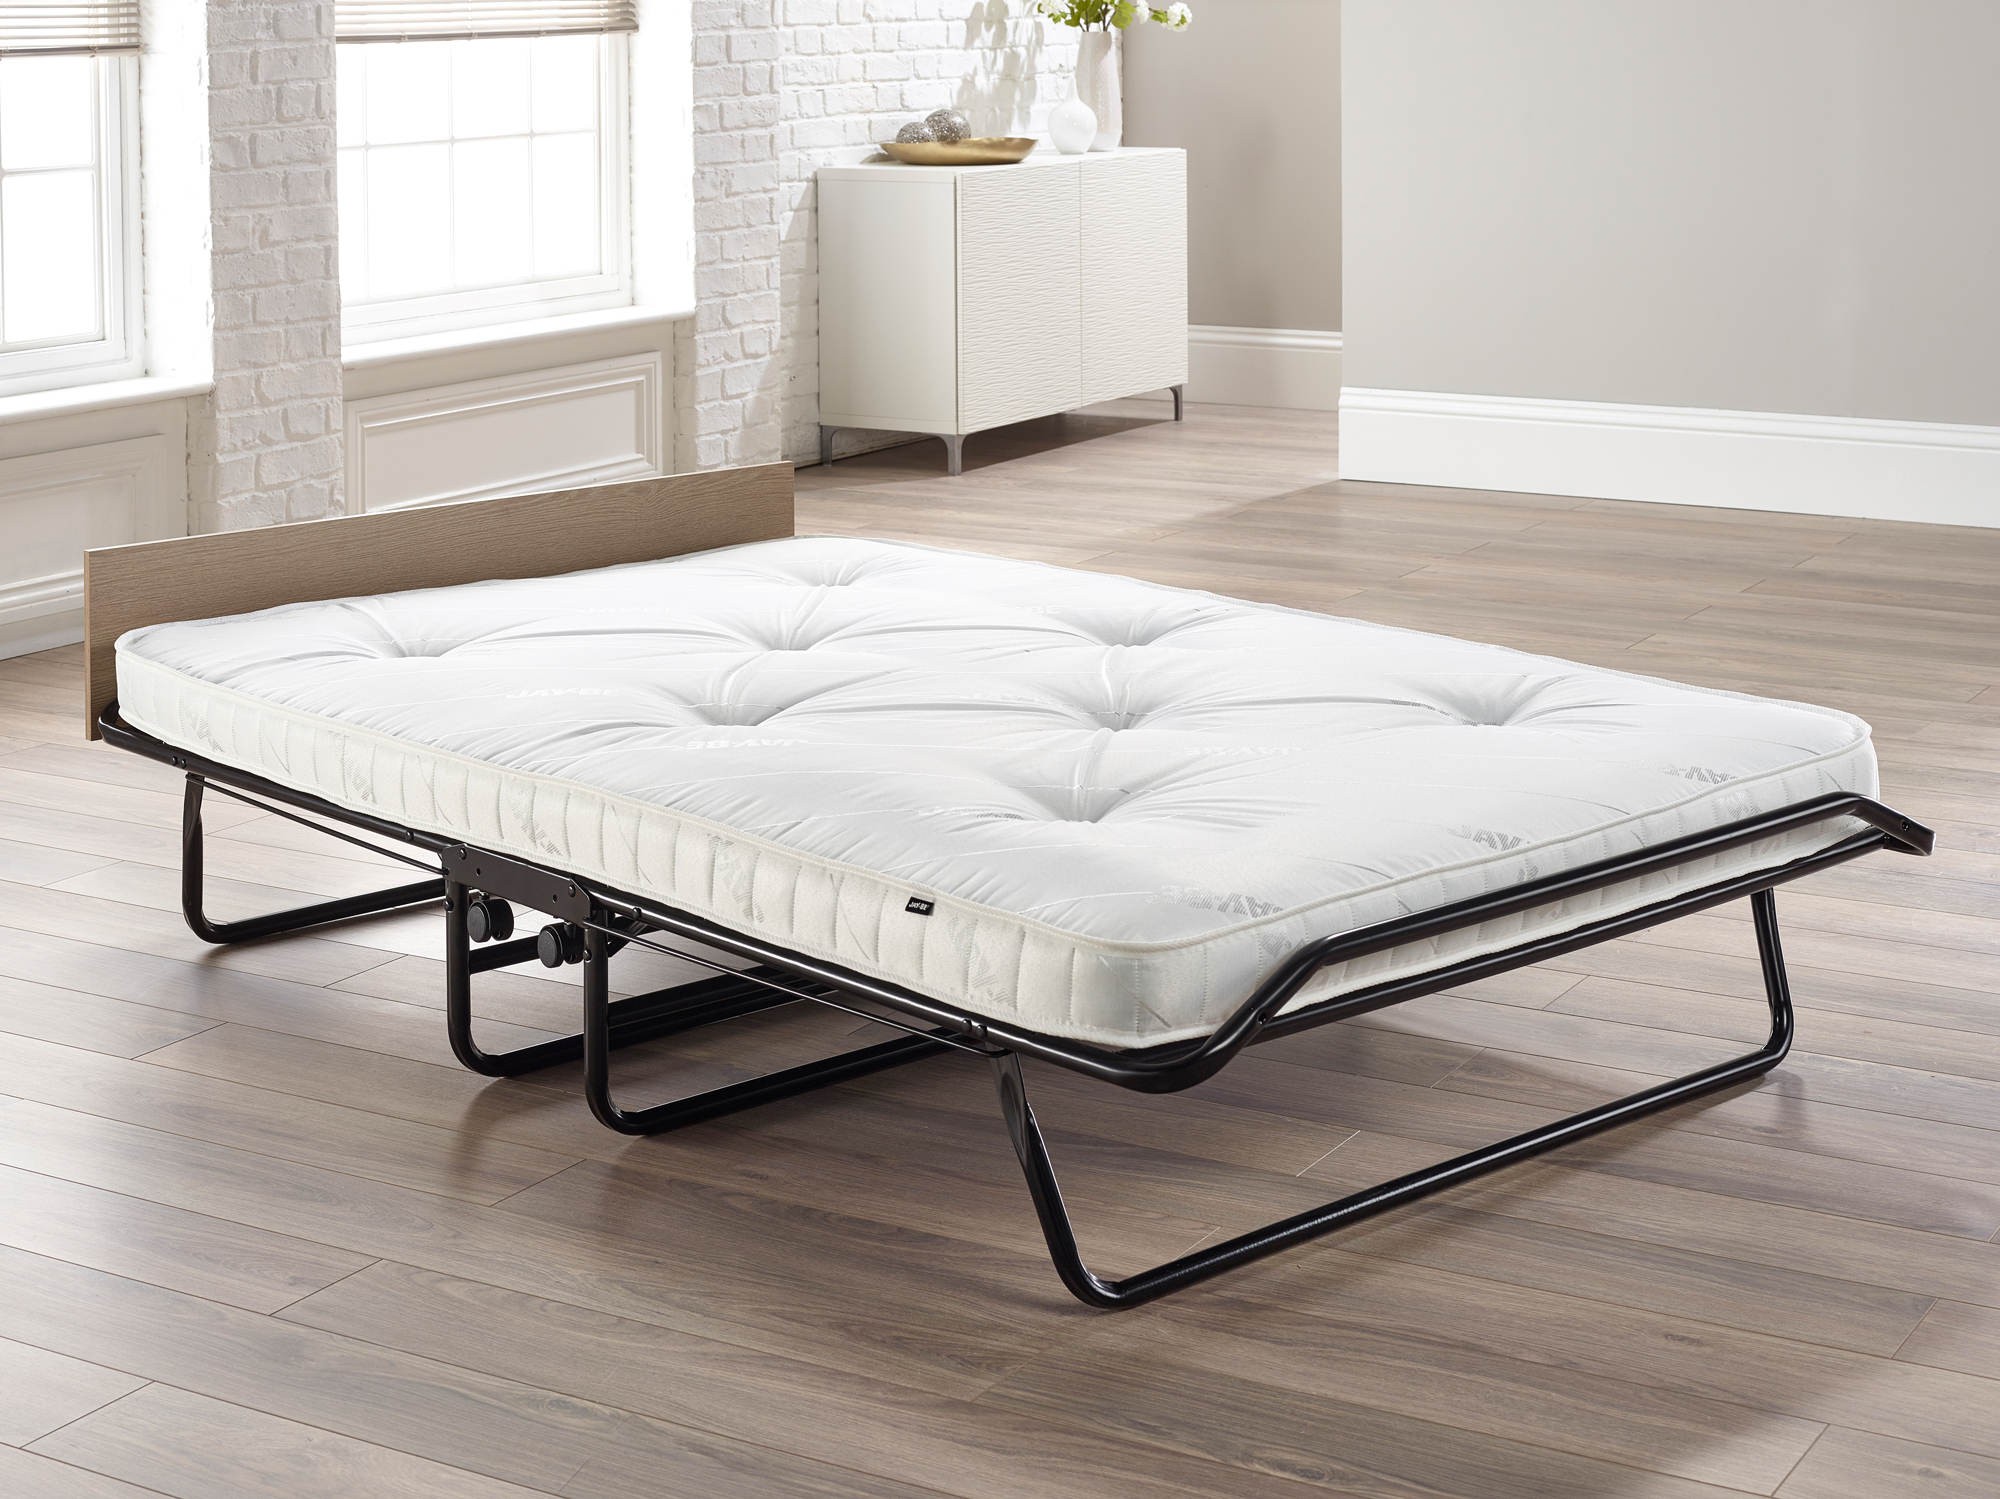 mattress for roll away beds